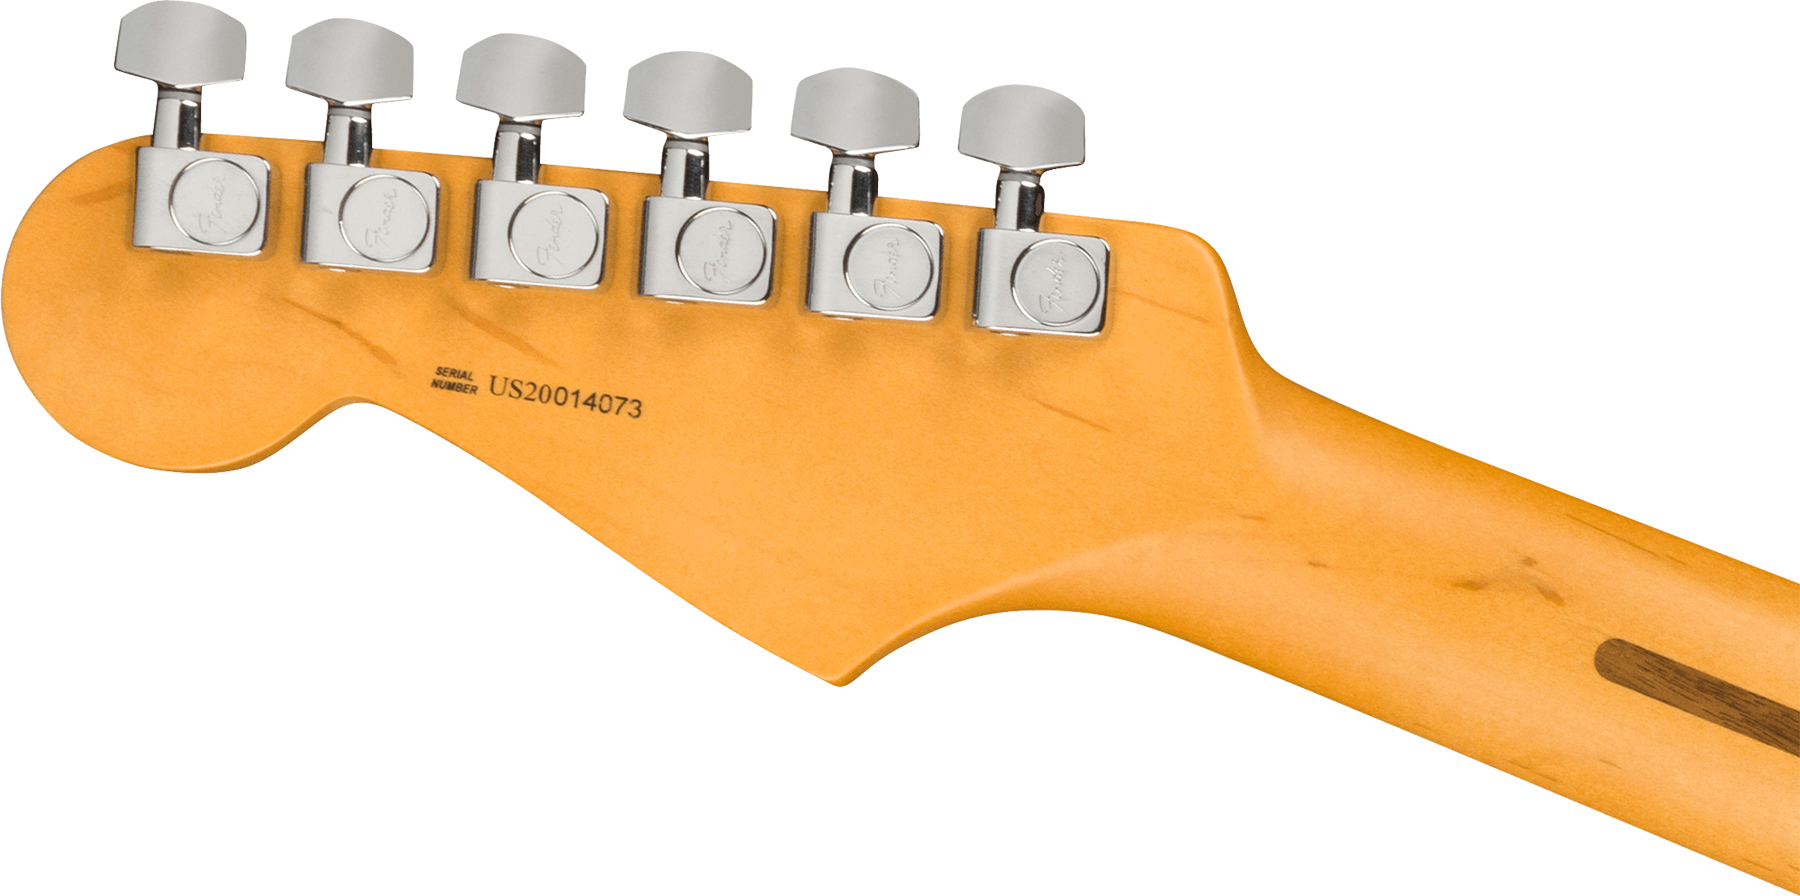 Fender Strat American Professional Ii Usa Mn - 3-color Sunburst - Str shape electric guitar - Variation 3